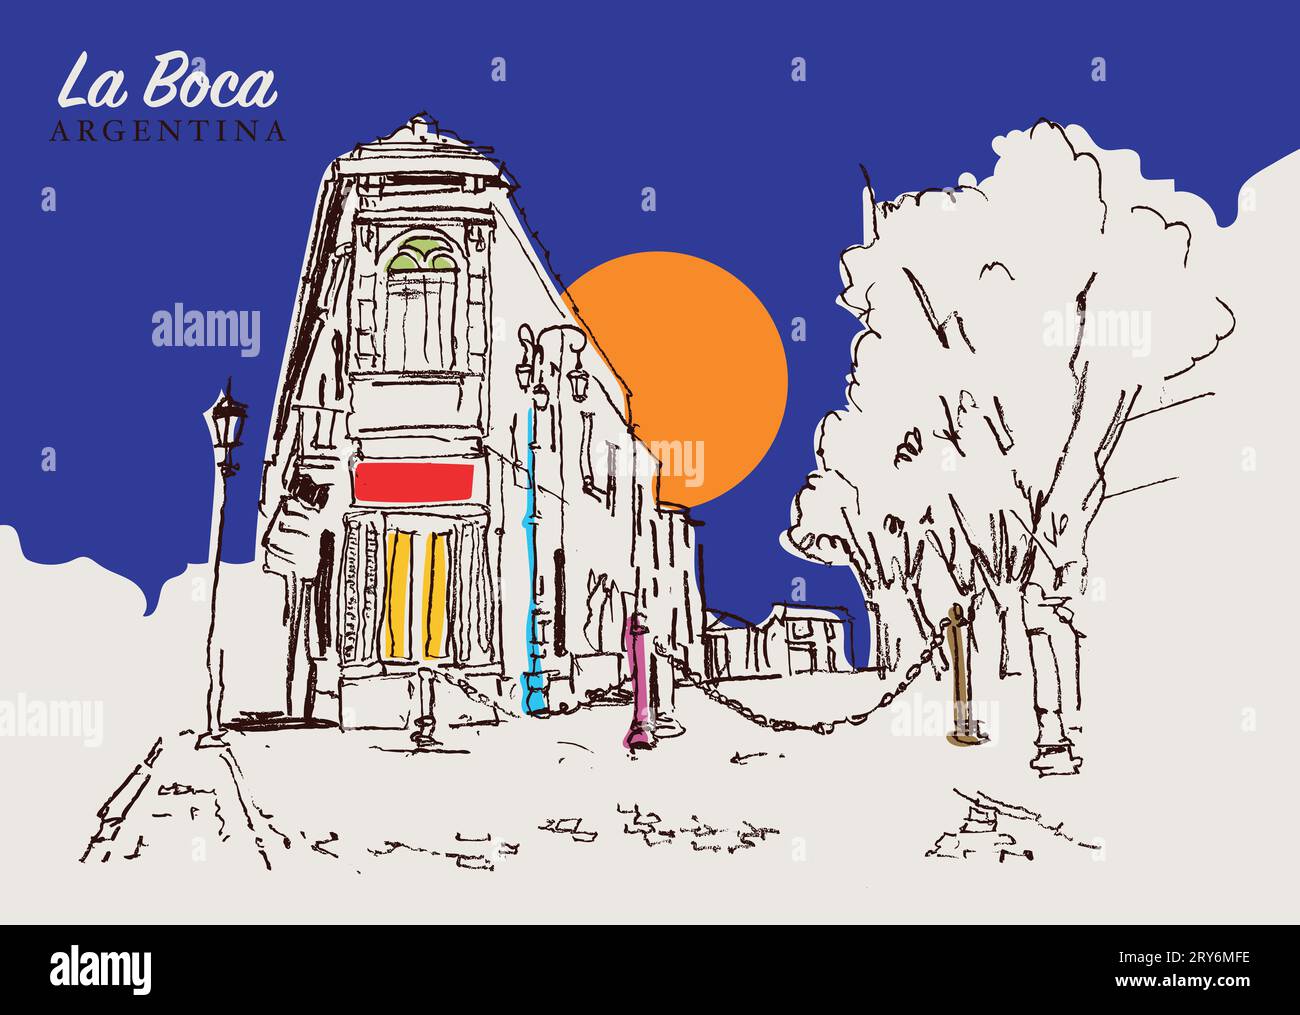 Illustration vectorielle dessinée à la main d'une rue traditionnelle à la Boca, Argentine. Banque D'Images